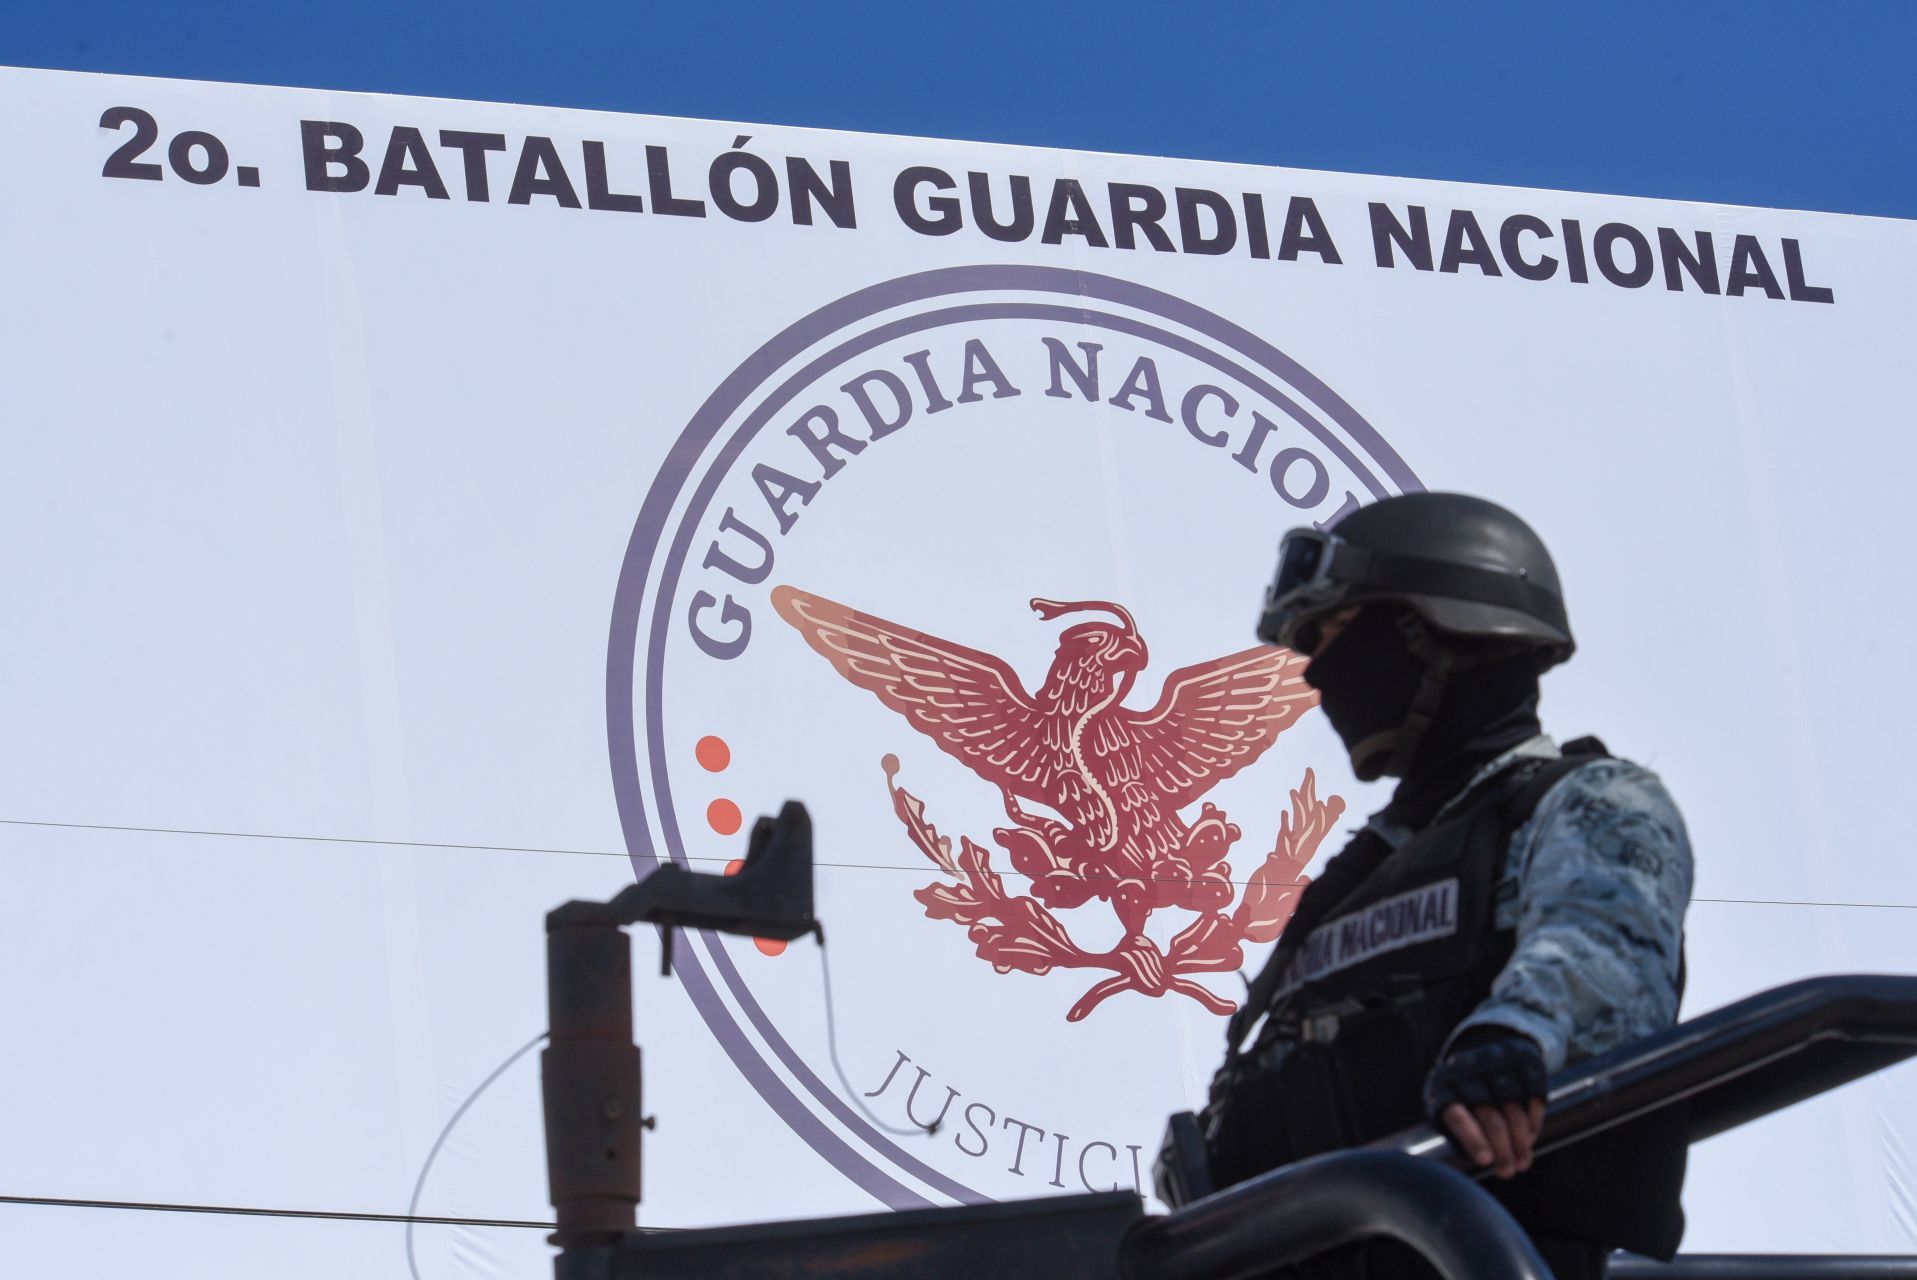 El alcalde de Monterrey advirtió que la integración de la Guardia Nacional a Sedena provocaría un choque entre instituciones  (FOTO: CRISANTA ESPINOSA AGUILAR /CUARTOSCURO.COM)